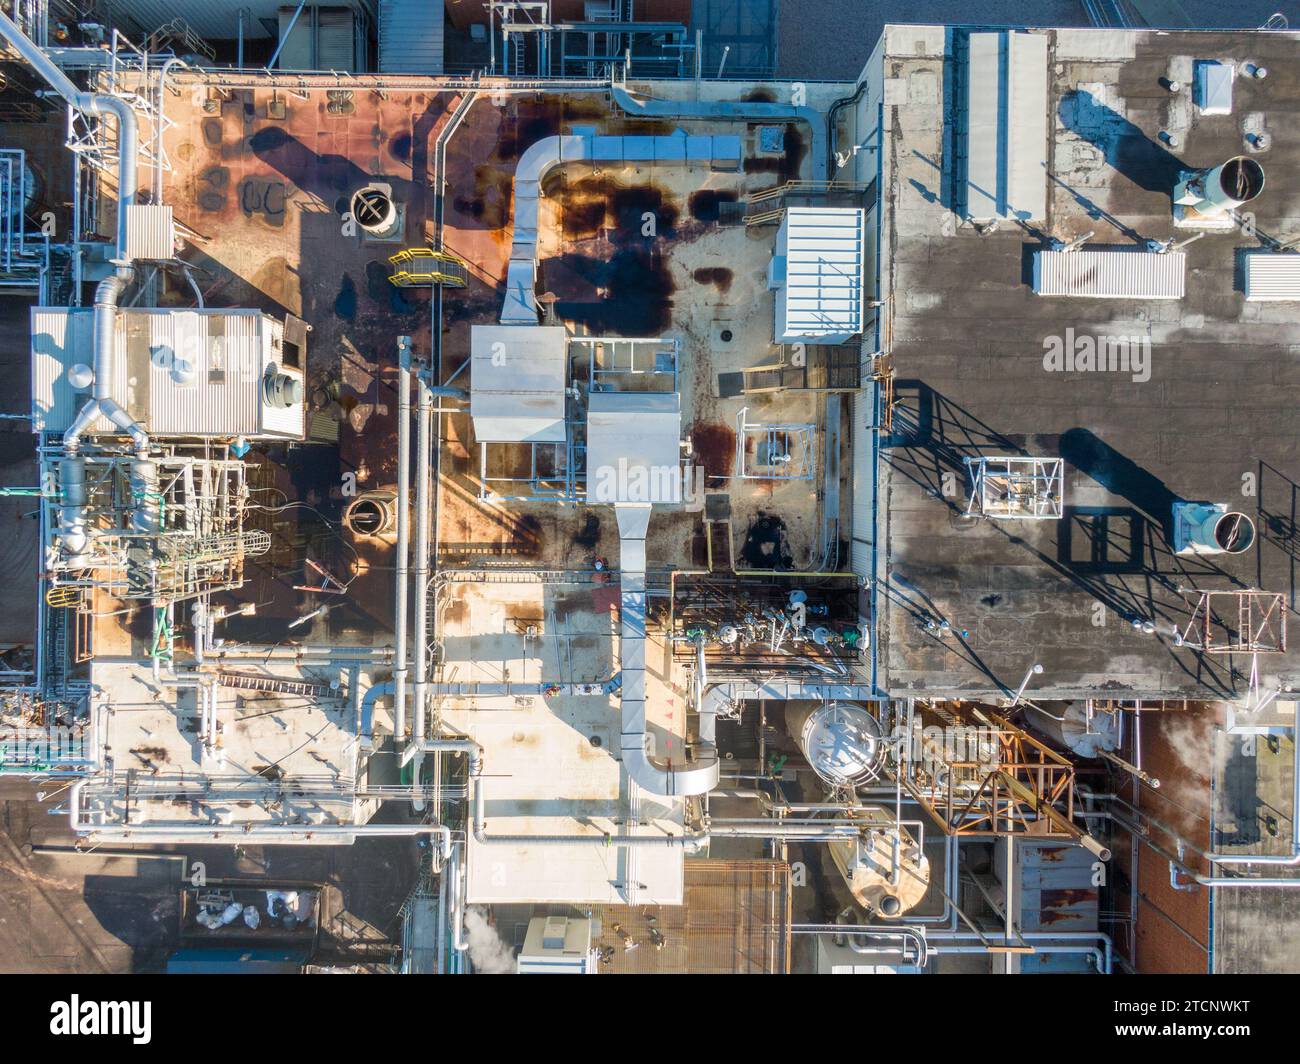 imágenes de drones de una gran fábrica de fabricación farmacéutica con muchas tuberías, ángulos fríos y sombras interesantes. Foto de stock